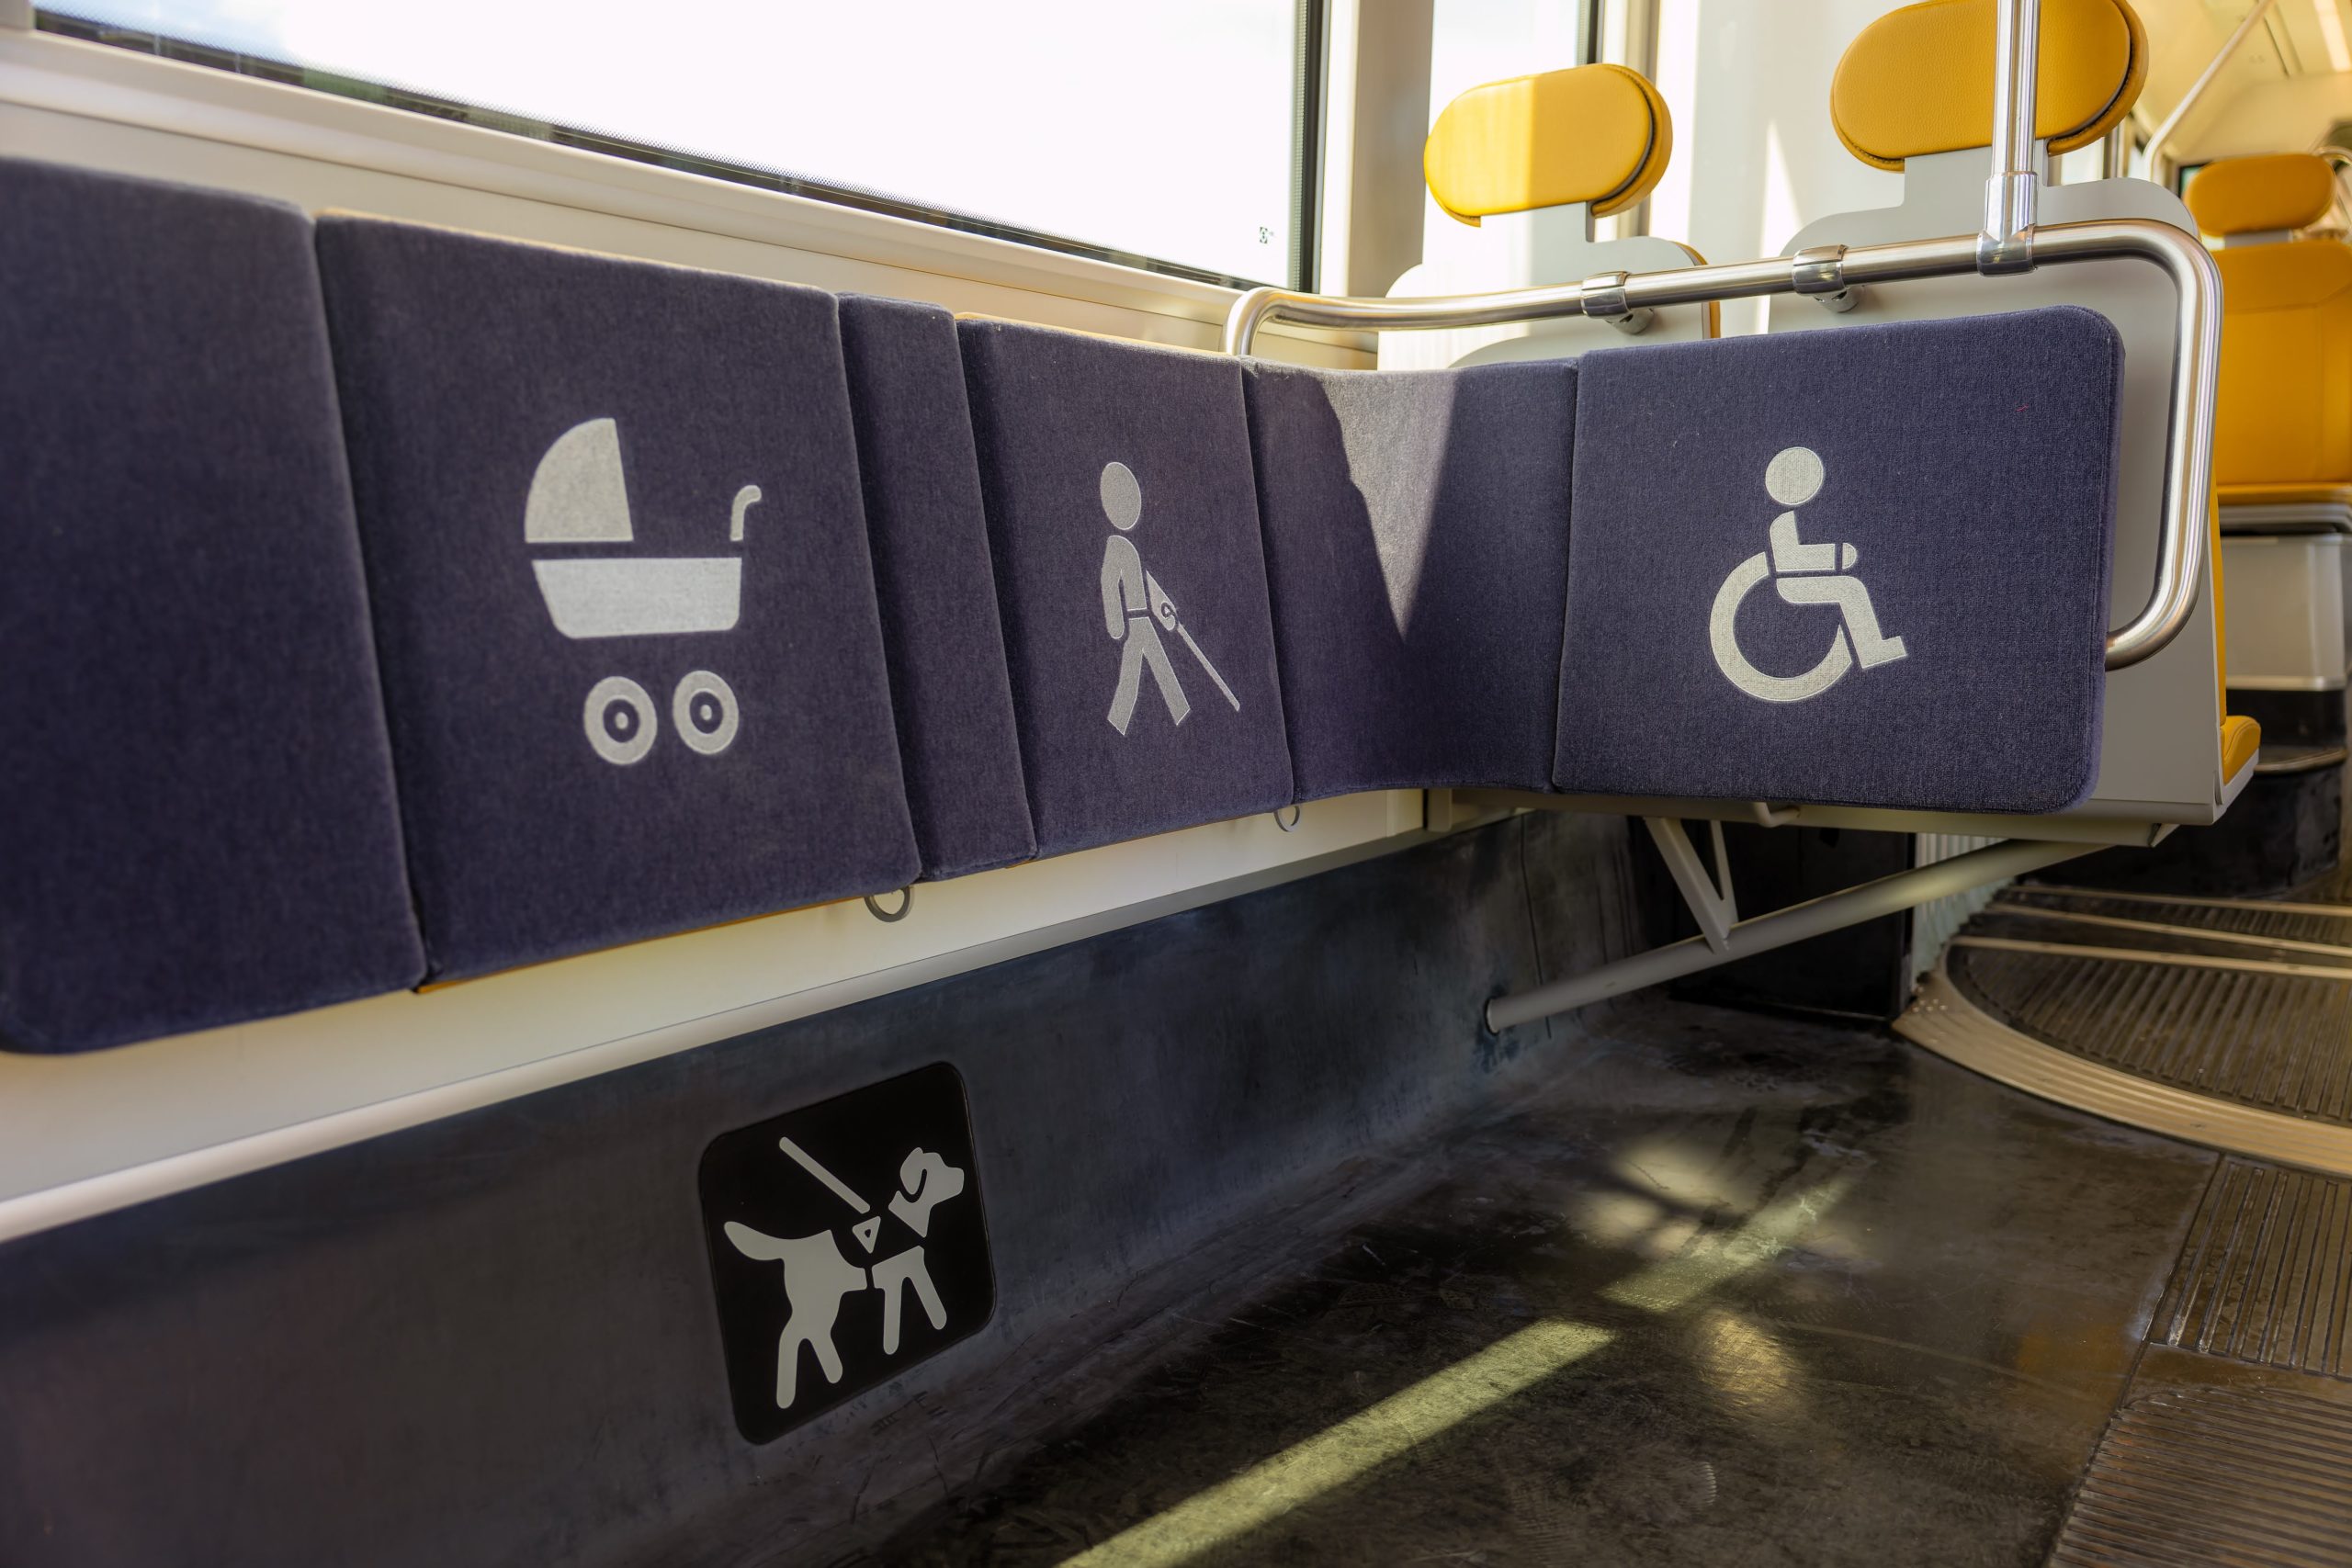 Pyörätuoli-, opaskoira-, valkoinen keppi- ja lastenvaunusymbolein merkityt istuimet vaunussa.